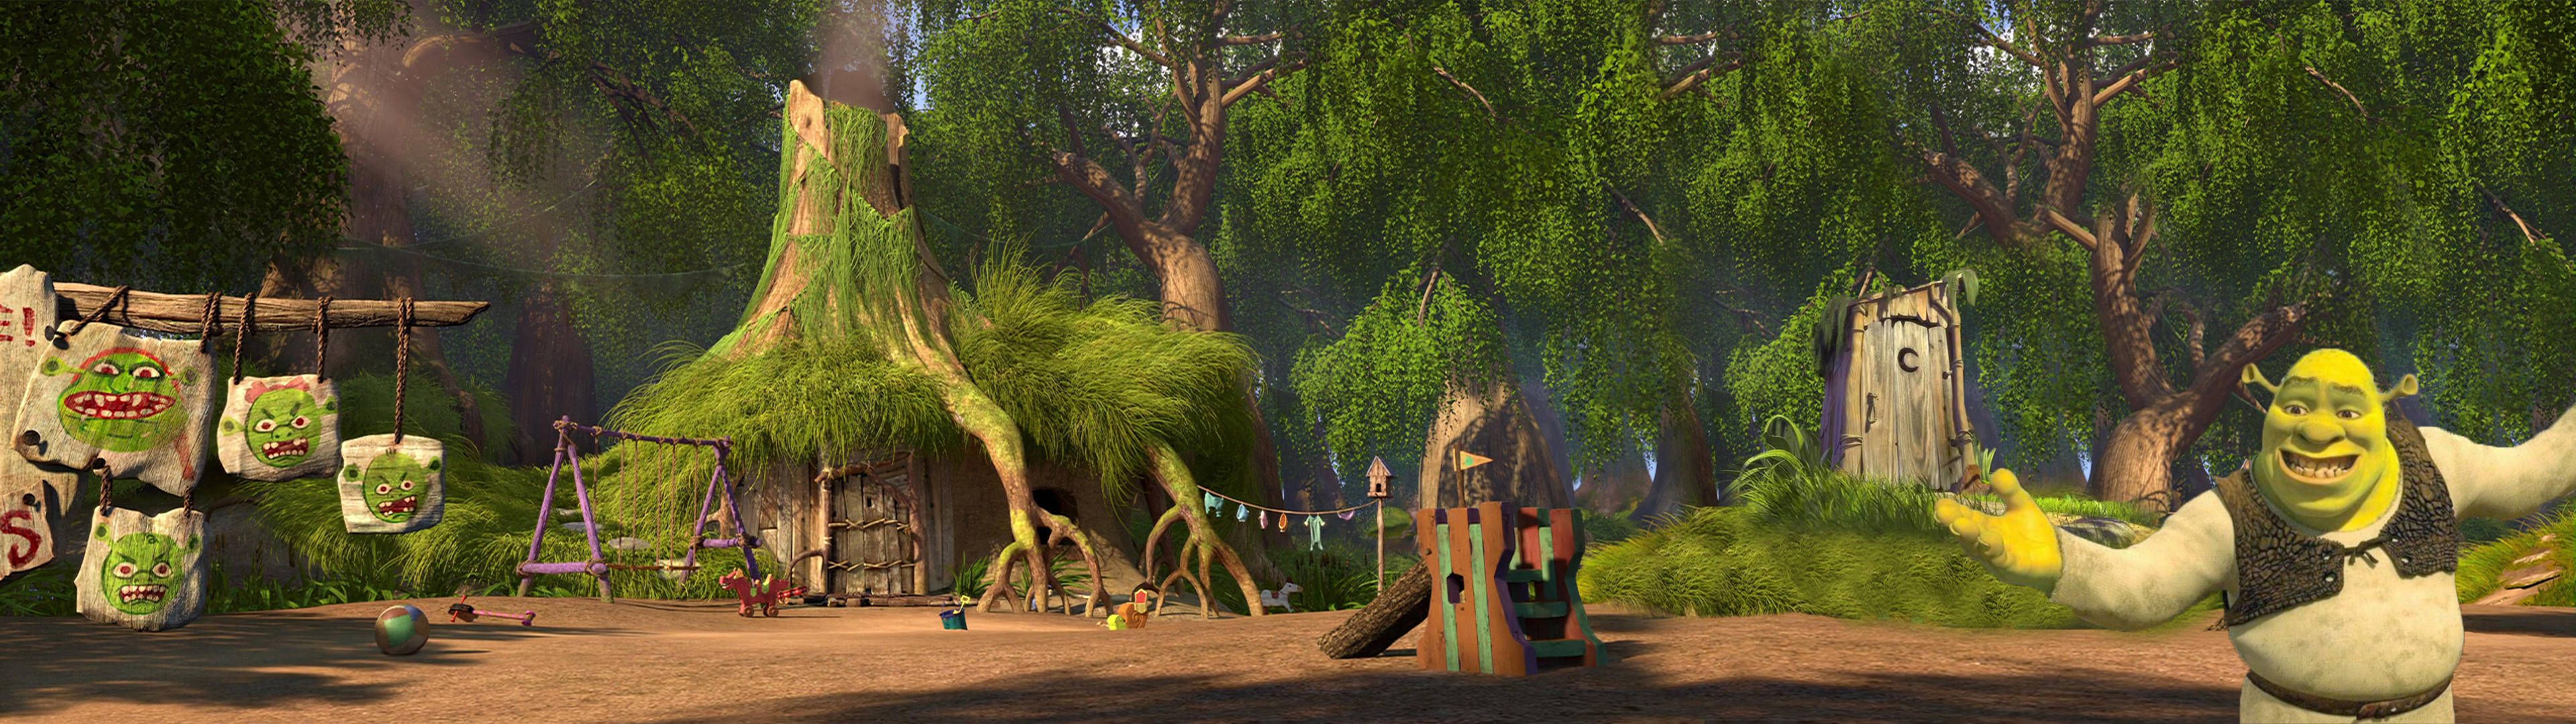 Shrek Panoramic View Background